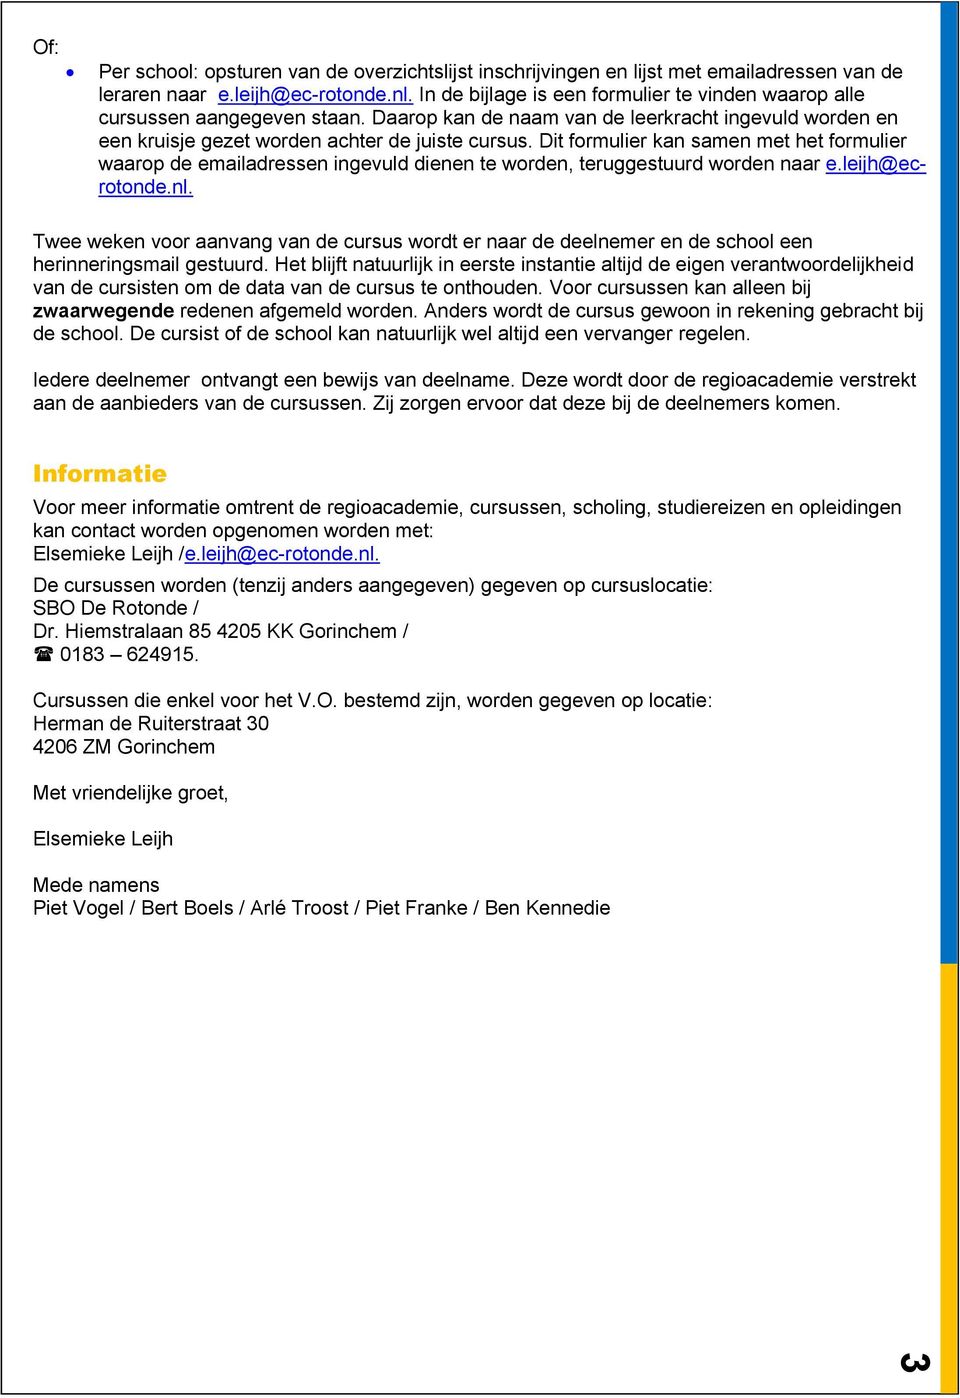 Dit formulier kan samen met het formulier waarop de emailadressen ingevuld dienen te worden, teruggestuurd worden naar e.leijh@ecrotonde.nl.